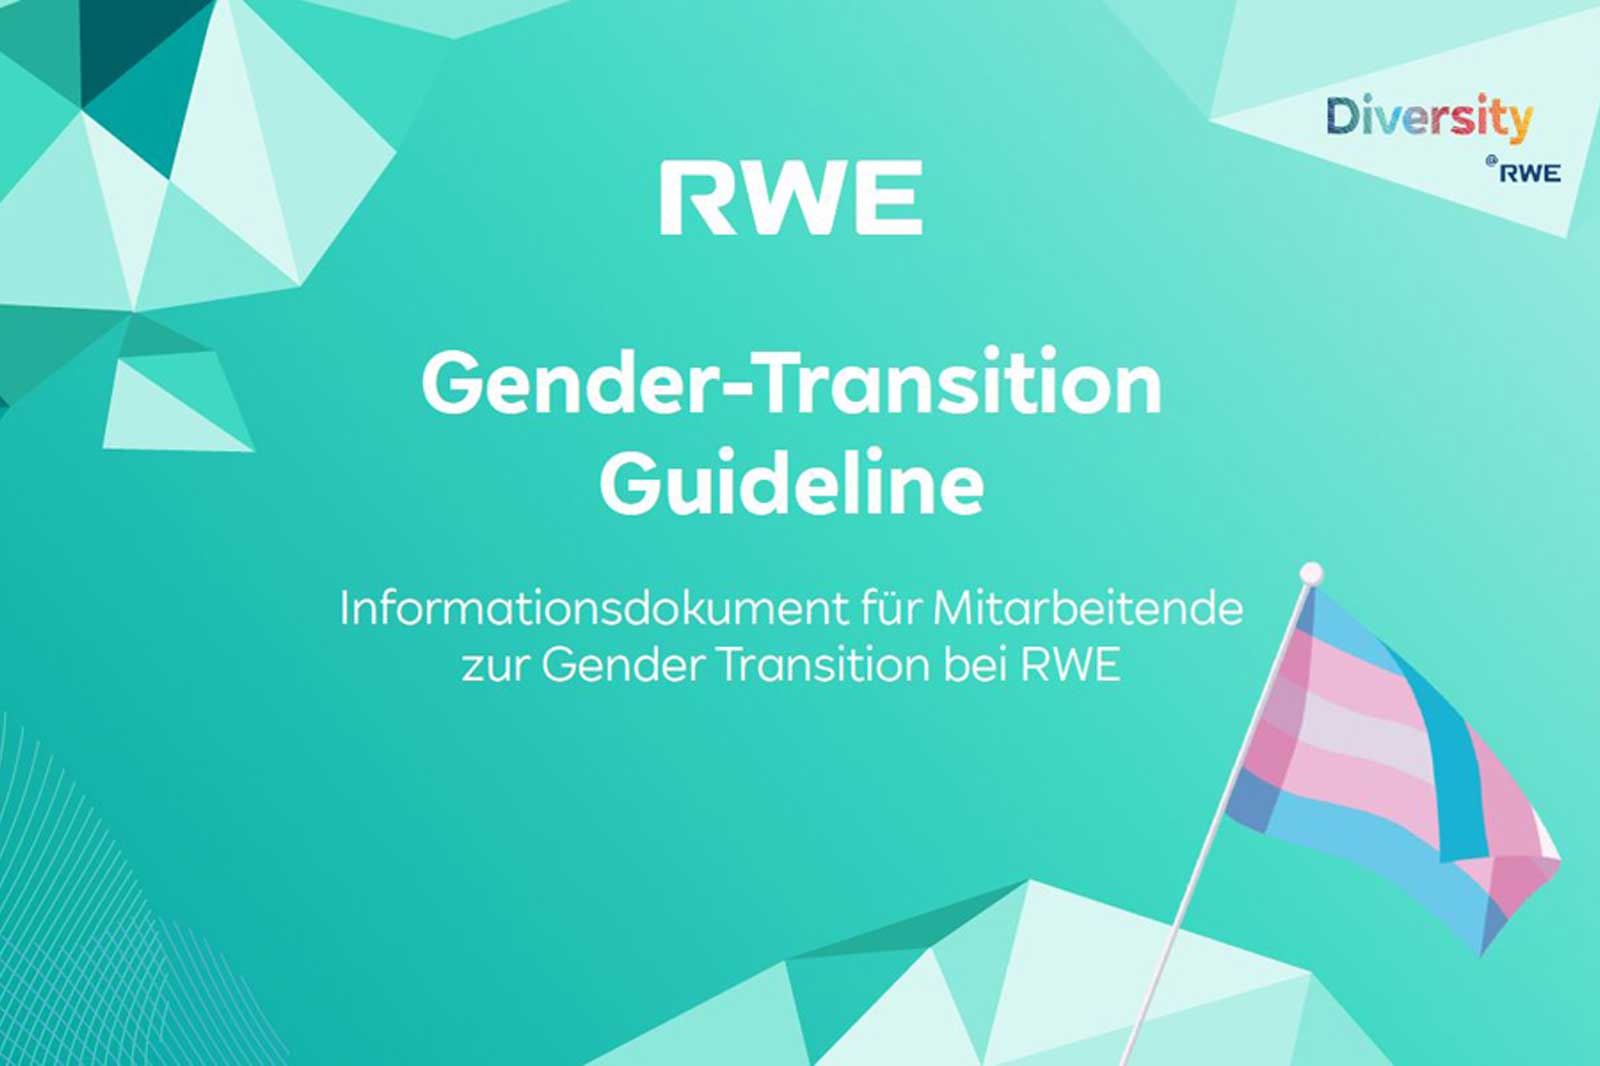 Gender-Transition Guideline